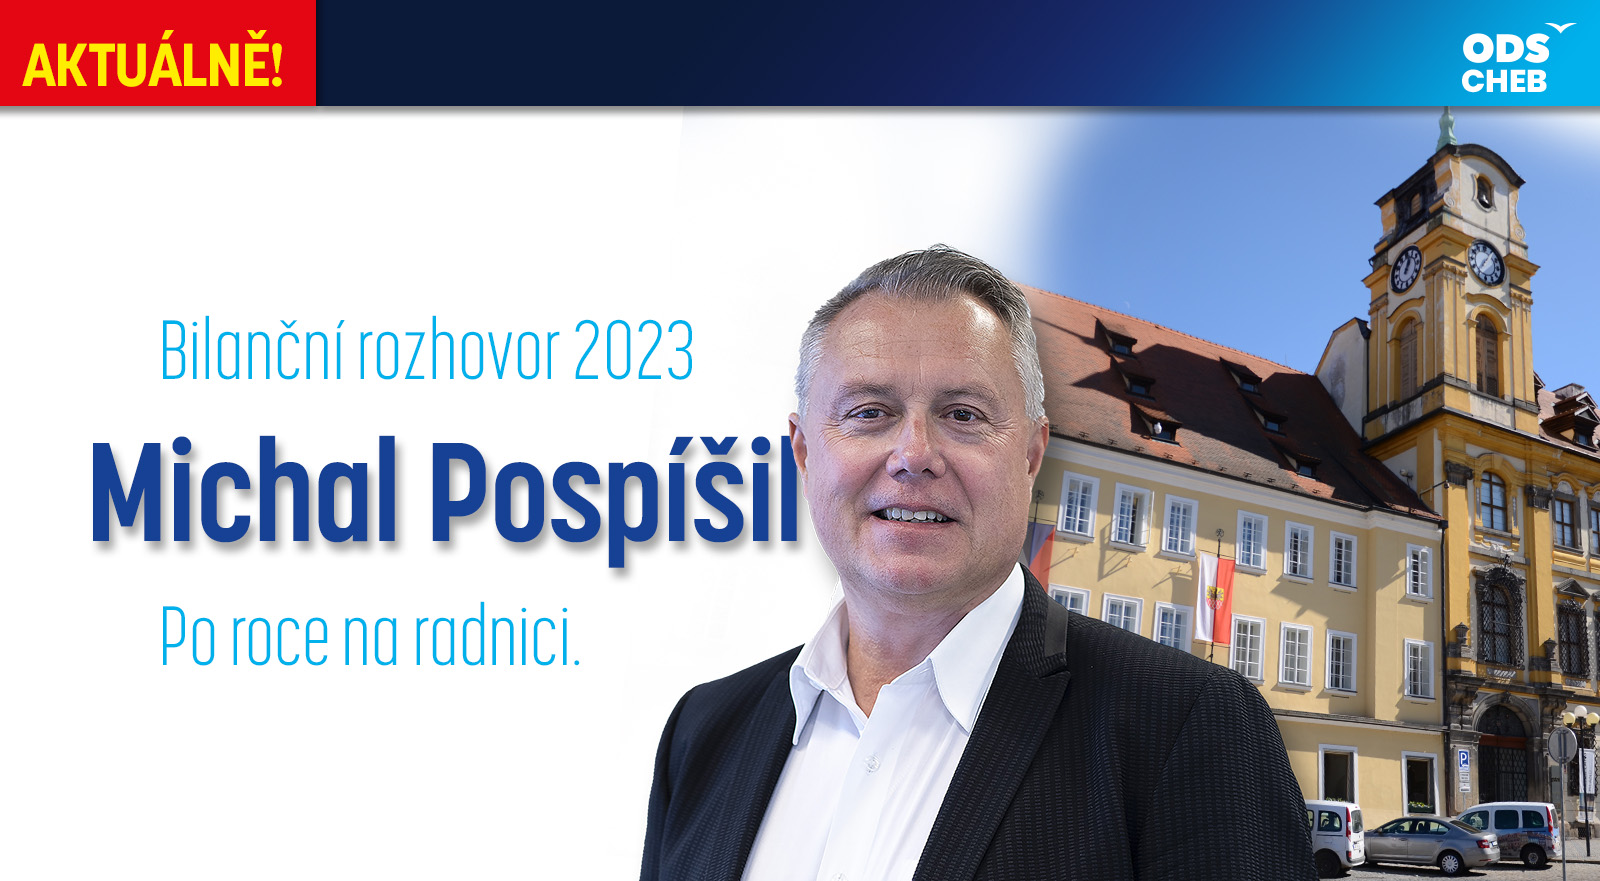 Aktuálně: Michal Pospíšil - Bilanční rozhovor 2023